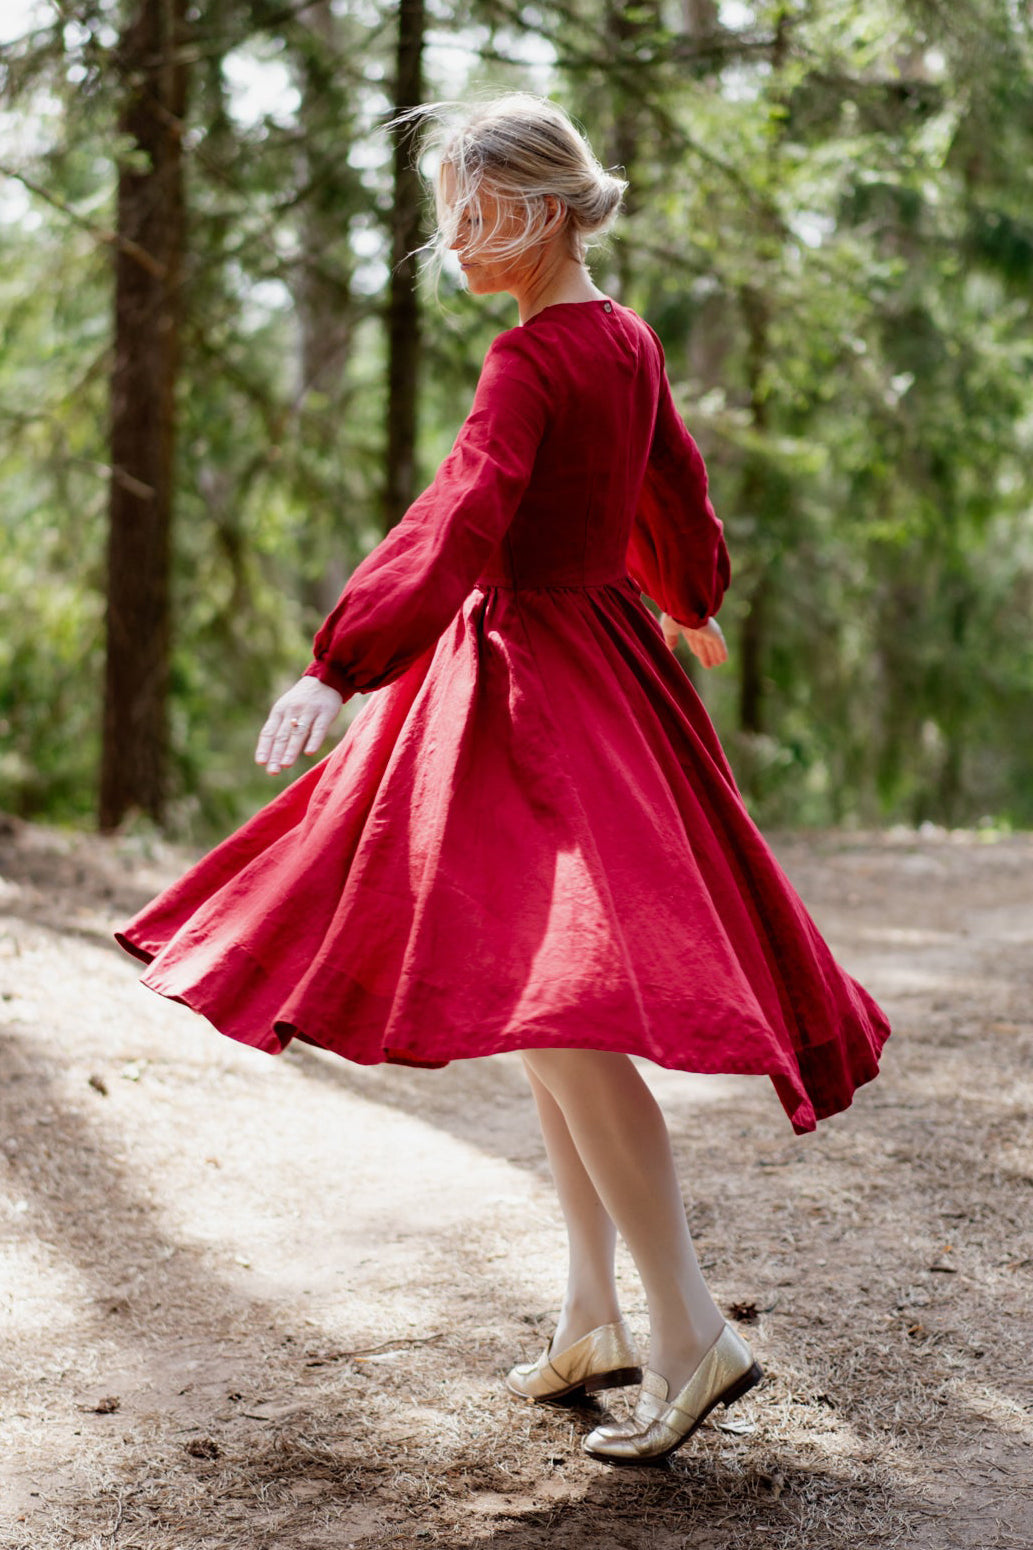 Scarlet Dress, Long Sleeve, Red Poppy